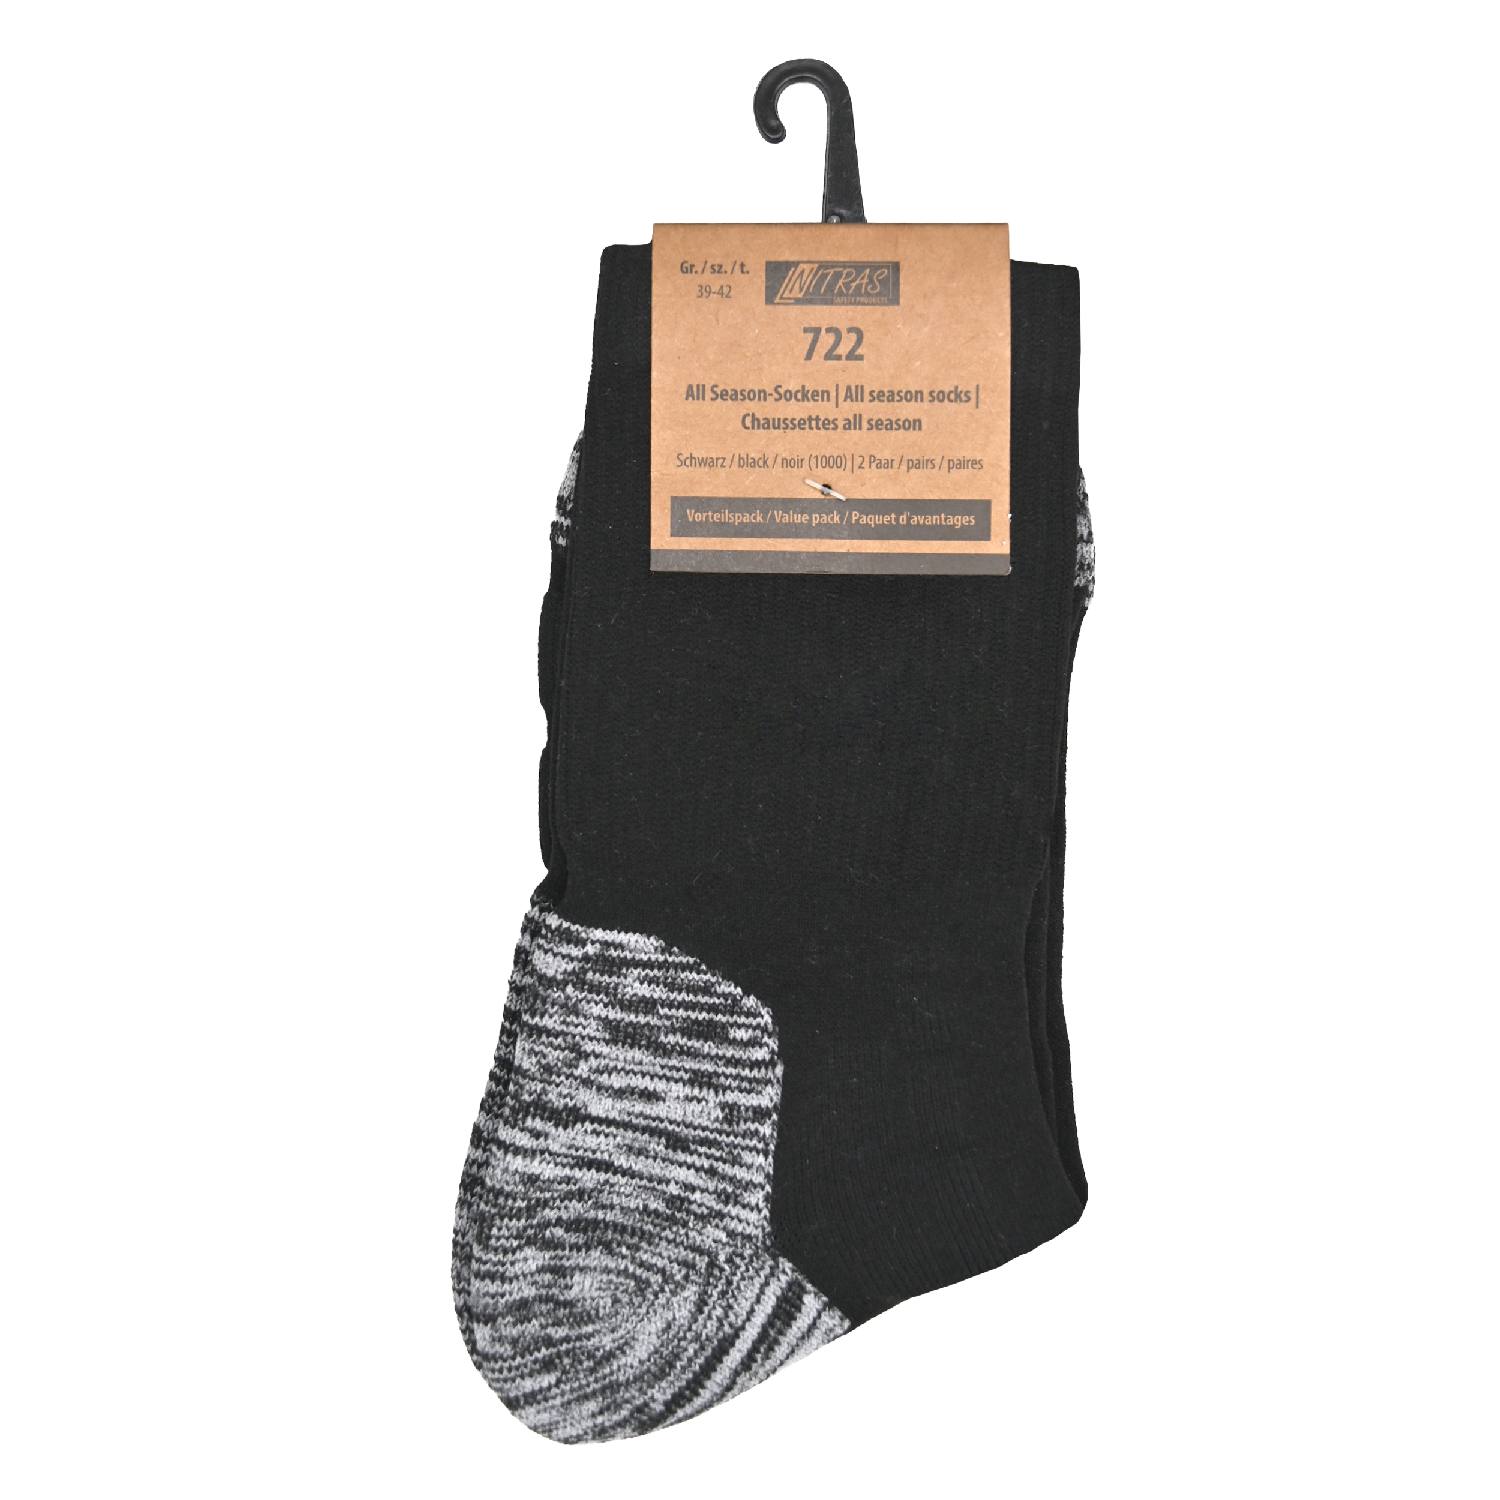 NITRAS All-Sason-Socken verstärkt mit Links-Rechts-Passform